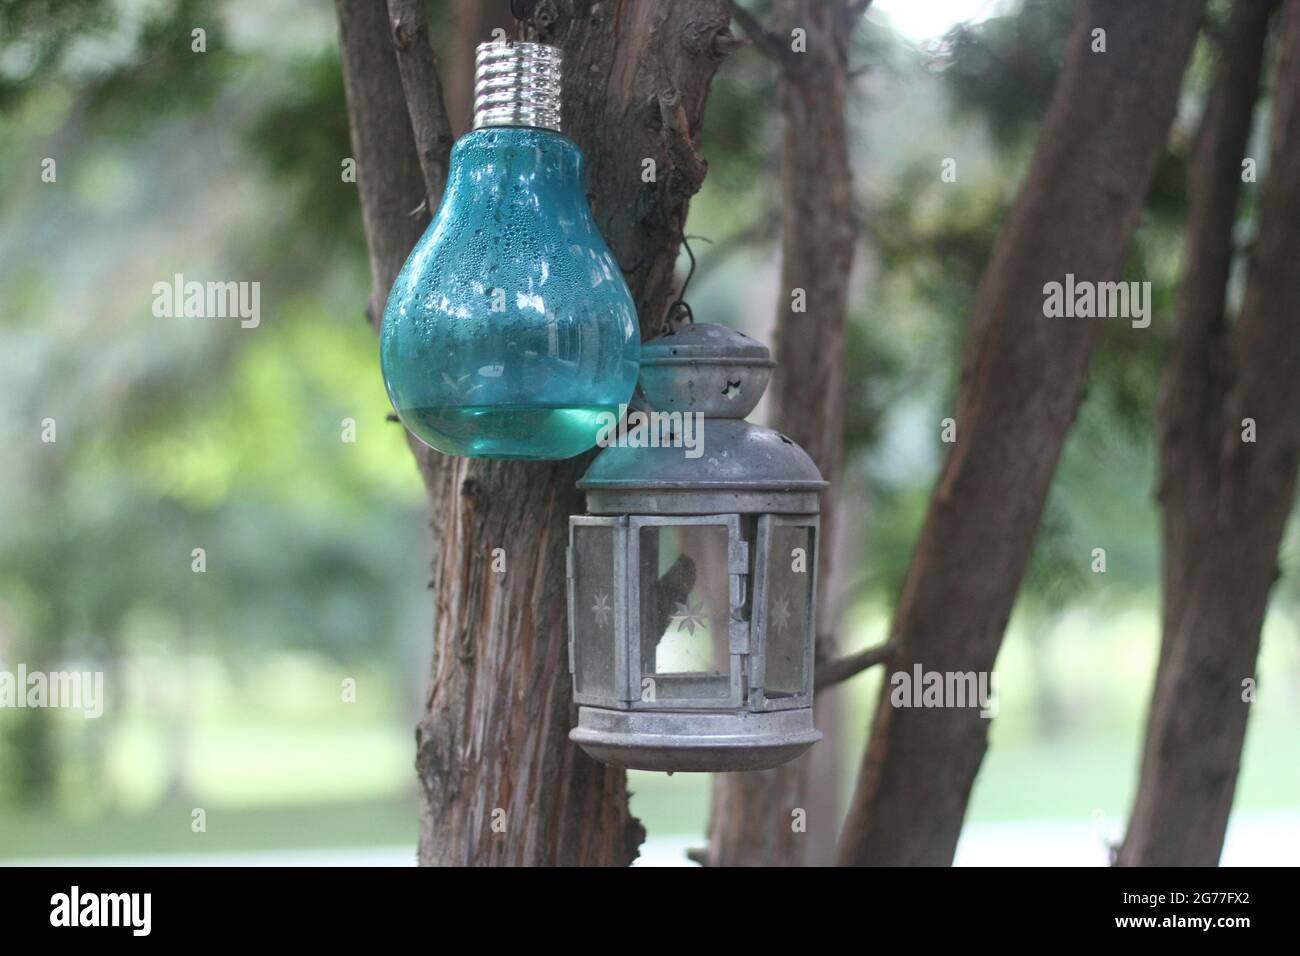 Ampoule bleue et lanterne métallique accrochée à un arbre Banque D'Images